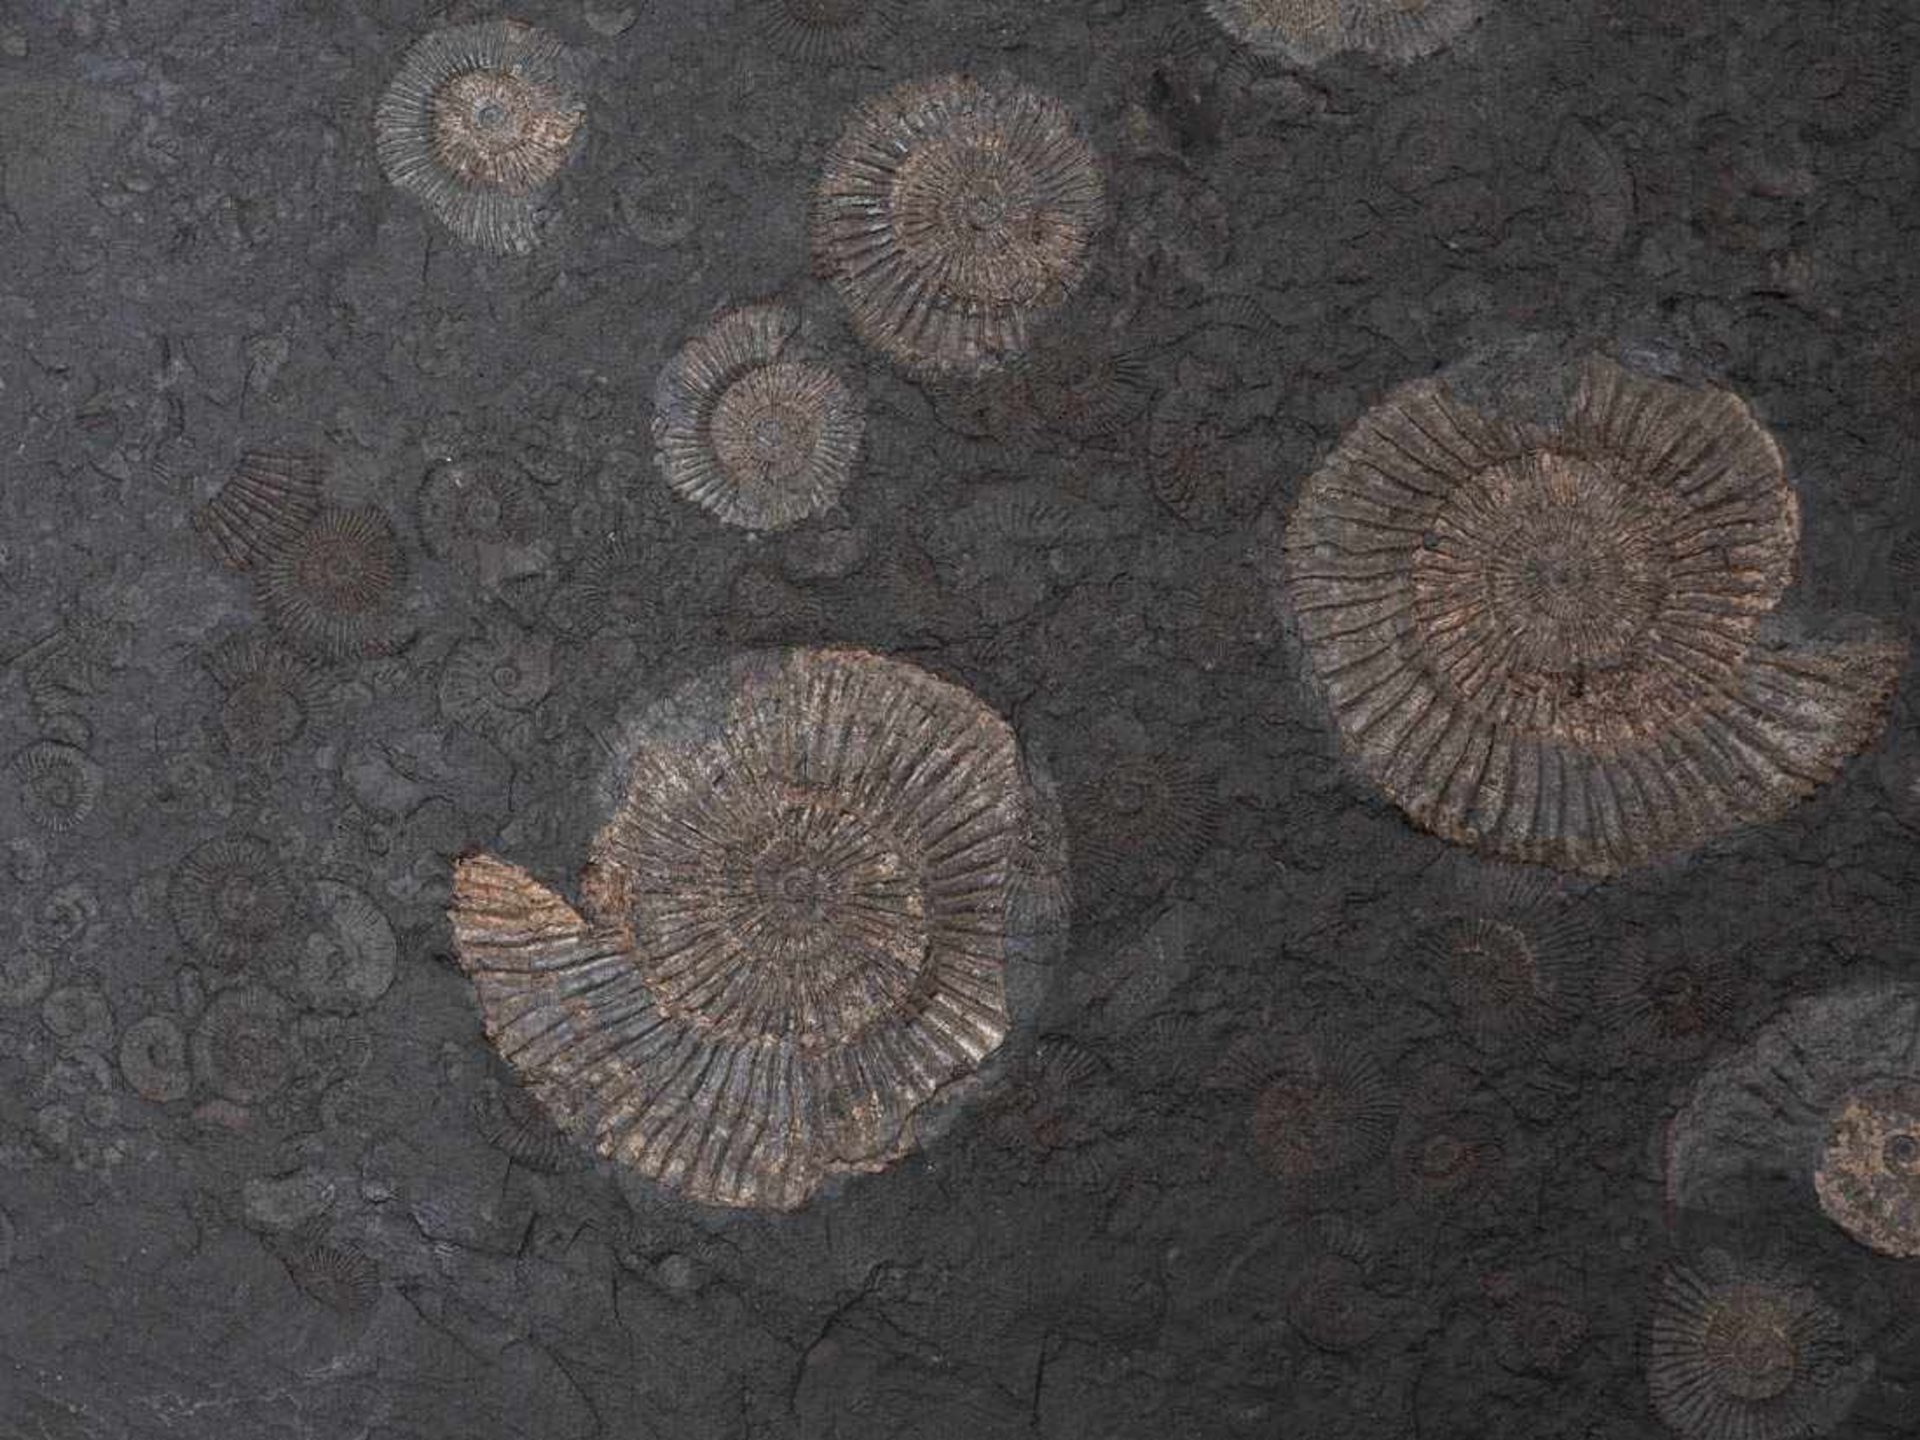 Ölschieferplatte mit AmmonitenFundort Holzmaden, präpariert. Mit Begleitschreiben. L.50cm. - Bild 3 aus 3